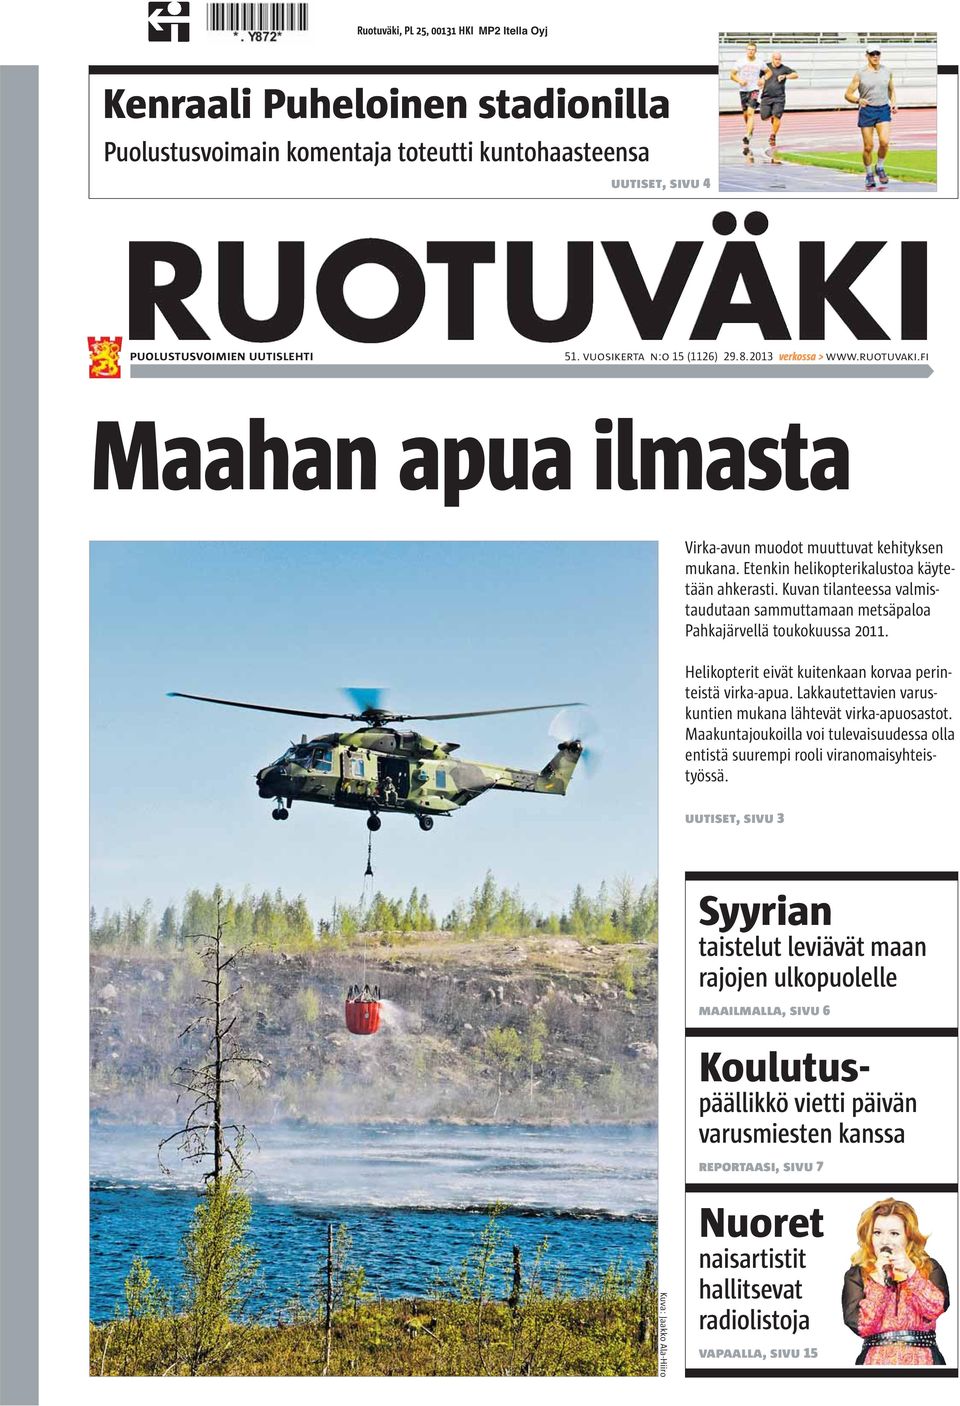 Kuvan tilanteessa valmistaudutaan sammuttamaan metsäpaloa Pahkajärvellä toukokuussa 2011. Helikopterit eivät kuitenkaan korvaa perinteistä virka-apua.